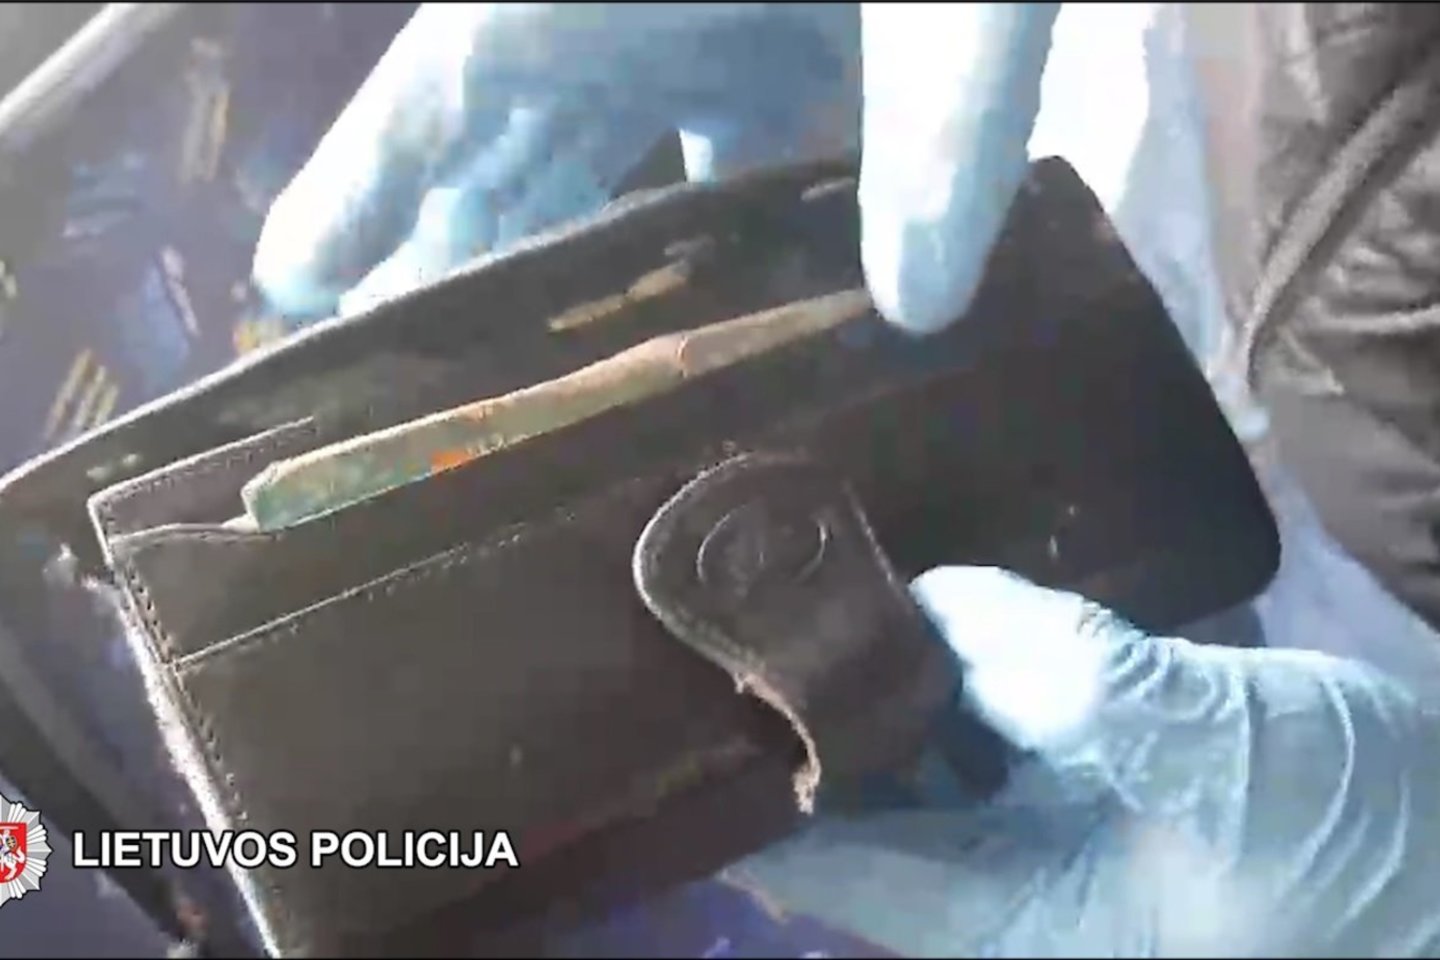 Vilniaus pareigūnai troleibuse parengė pasalą ir sulaikė gerai žinomą kišenvagę.<br>Lietuvos policijos nuotr.